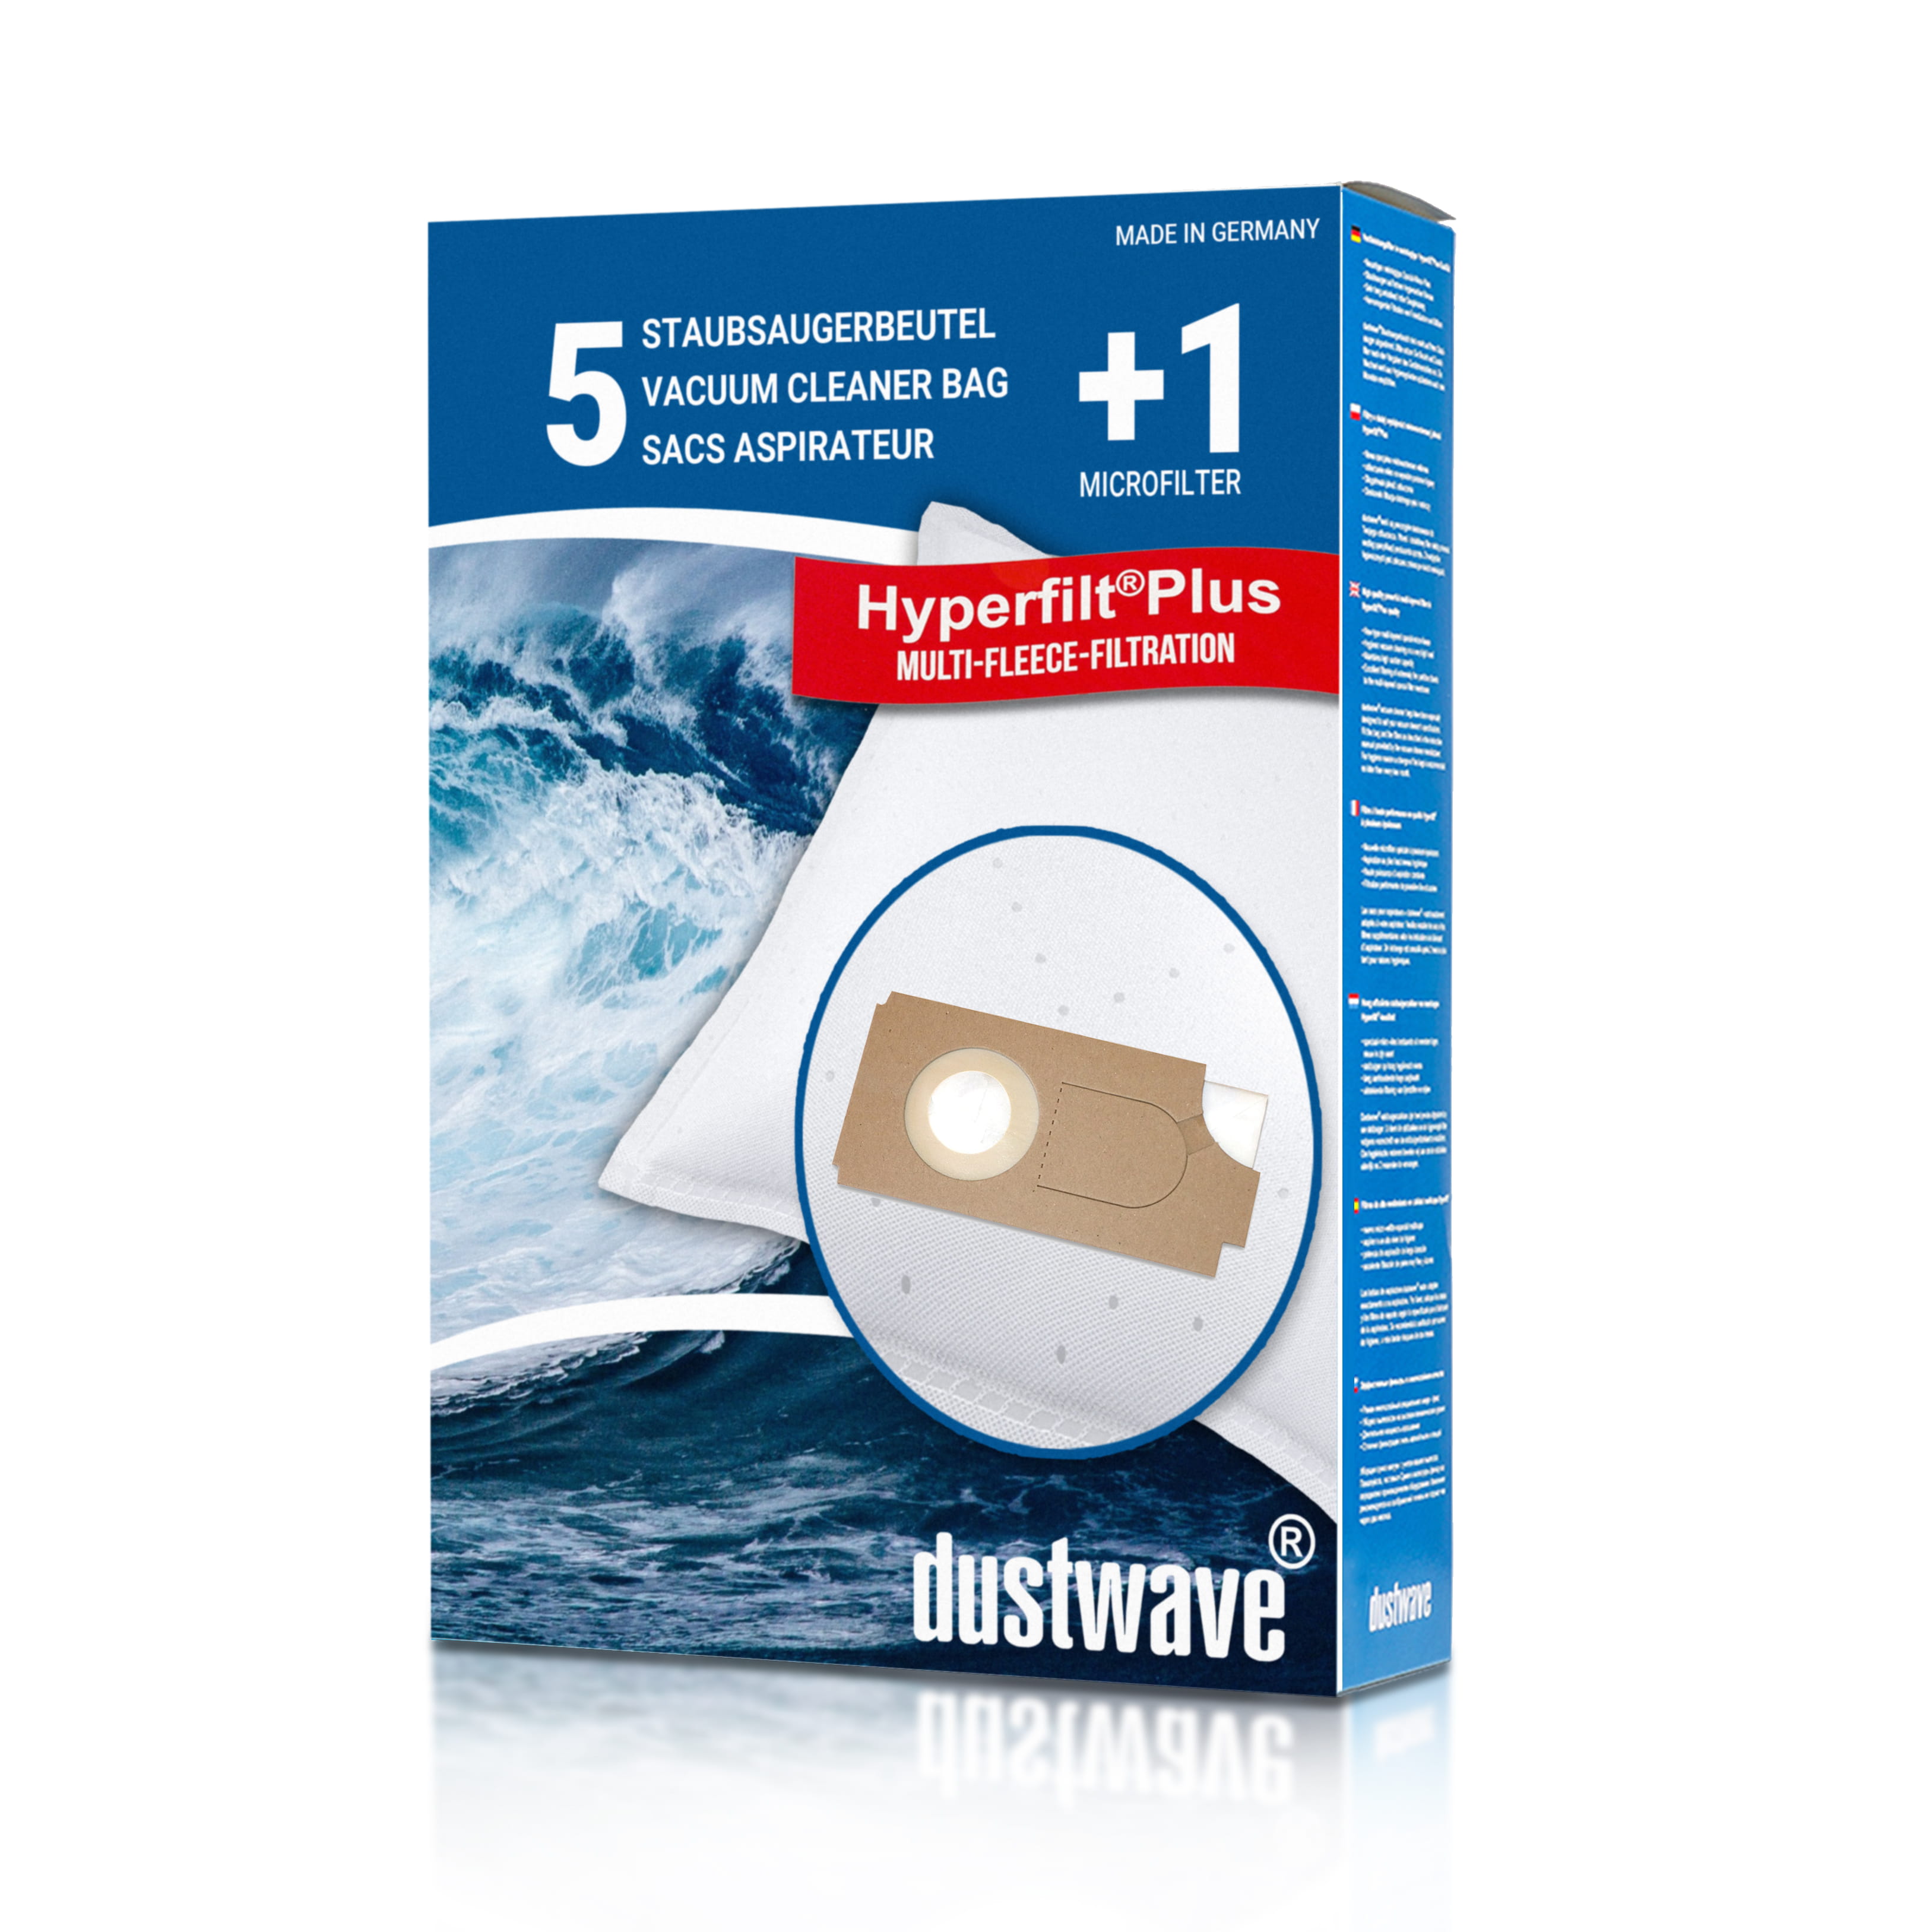 Dustwave® 5 Staubsaugerbeutel für Borema BS 460 / BS460 - hocheffizient, mehrlagiges Mikrovlies mit Hygieneverschluss - Made in Germany